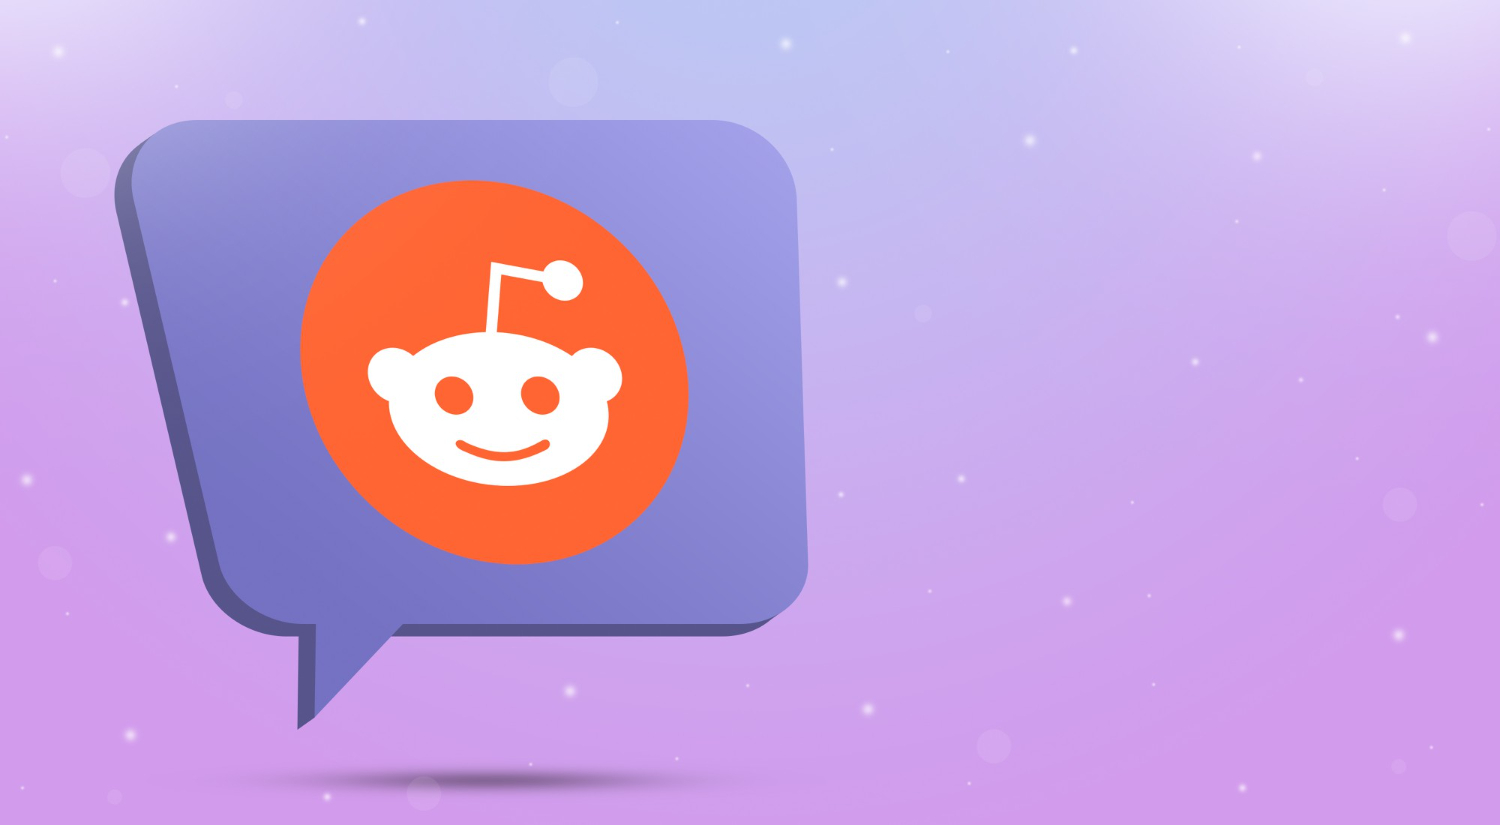 reddit-logo-icon-speech-bubble-3d